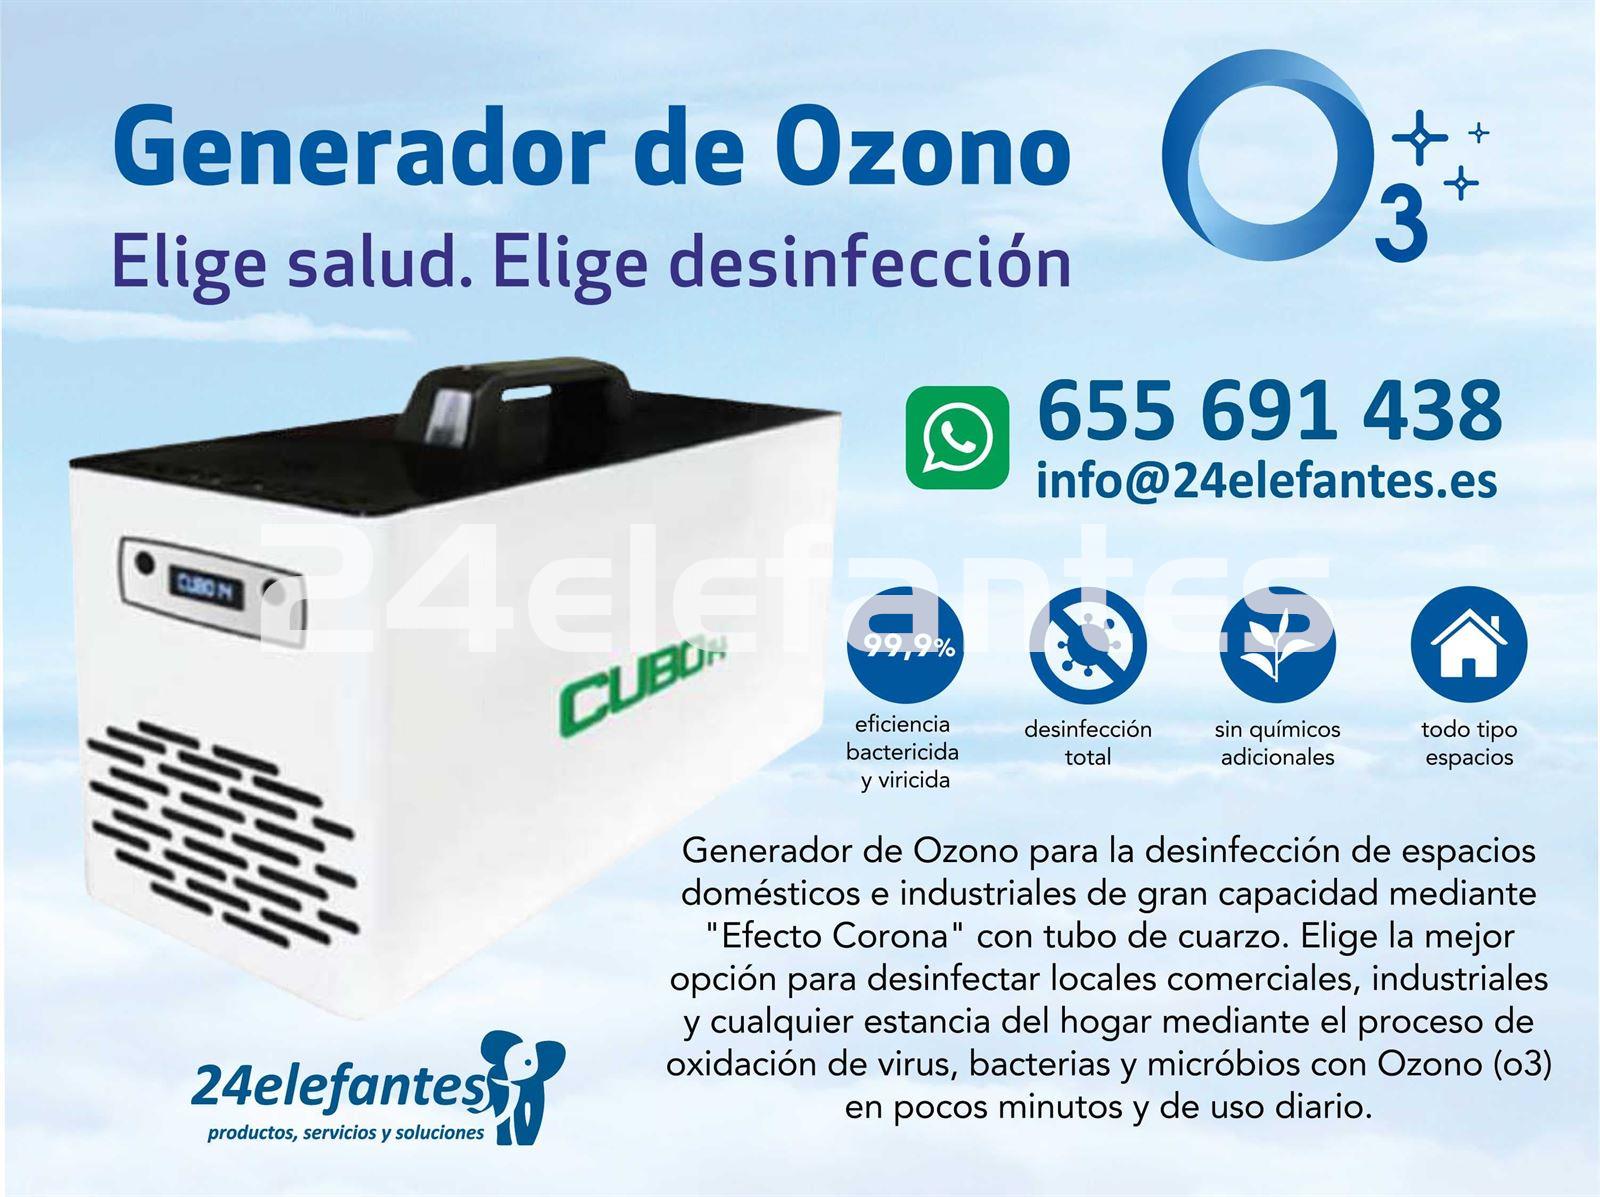 Generador de Ozono Elige salud. Elige desinfección - Imagen 2